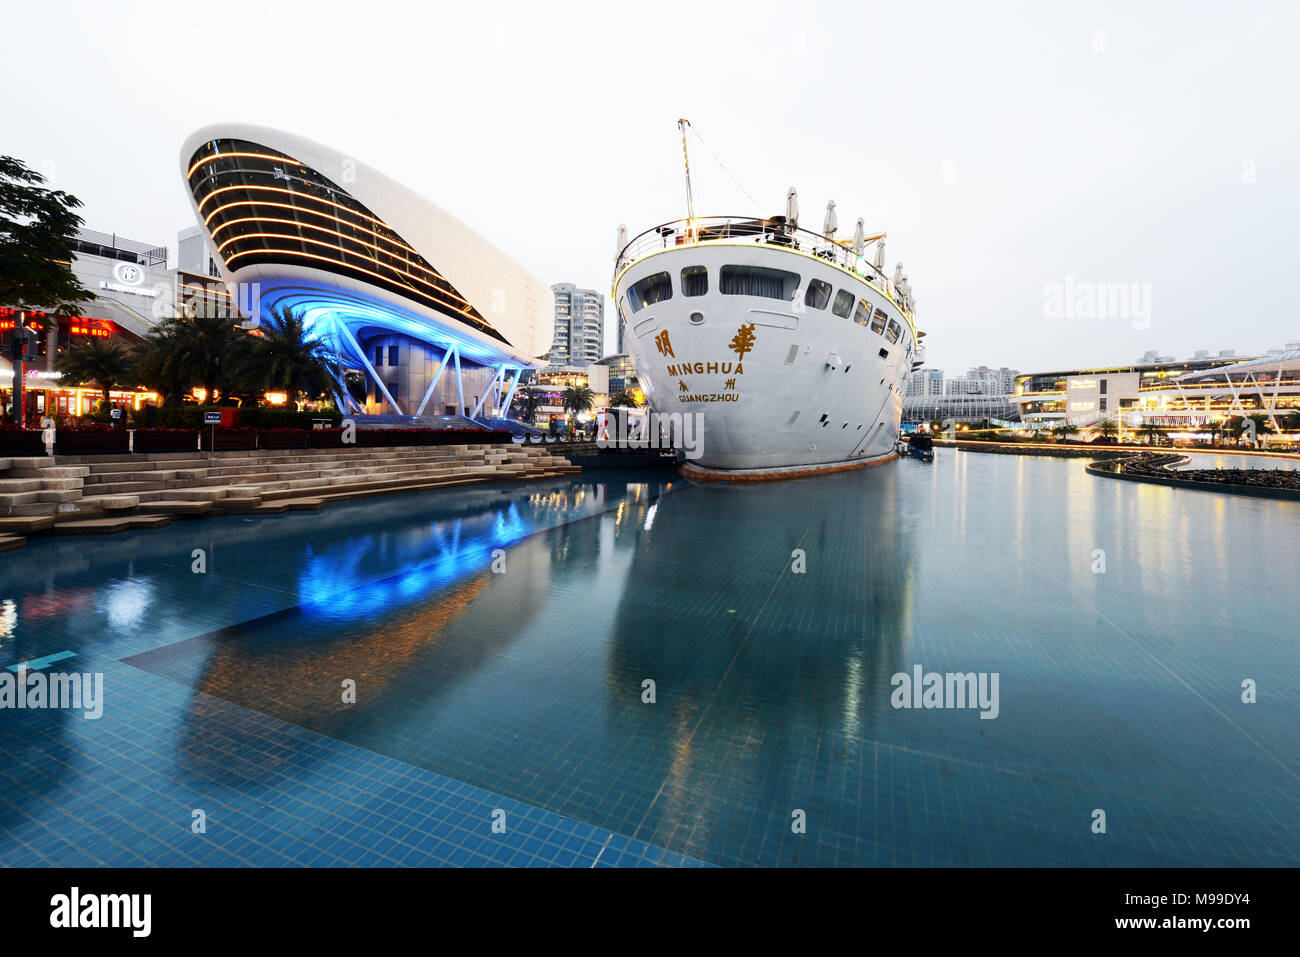 Die Minghua Schiff an das neue Sea Wold plaza Unterhaltung Zone. Stockfoto